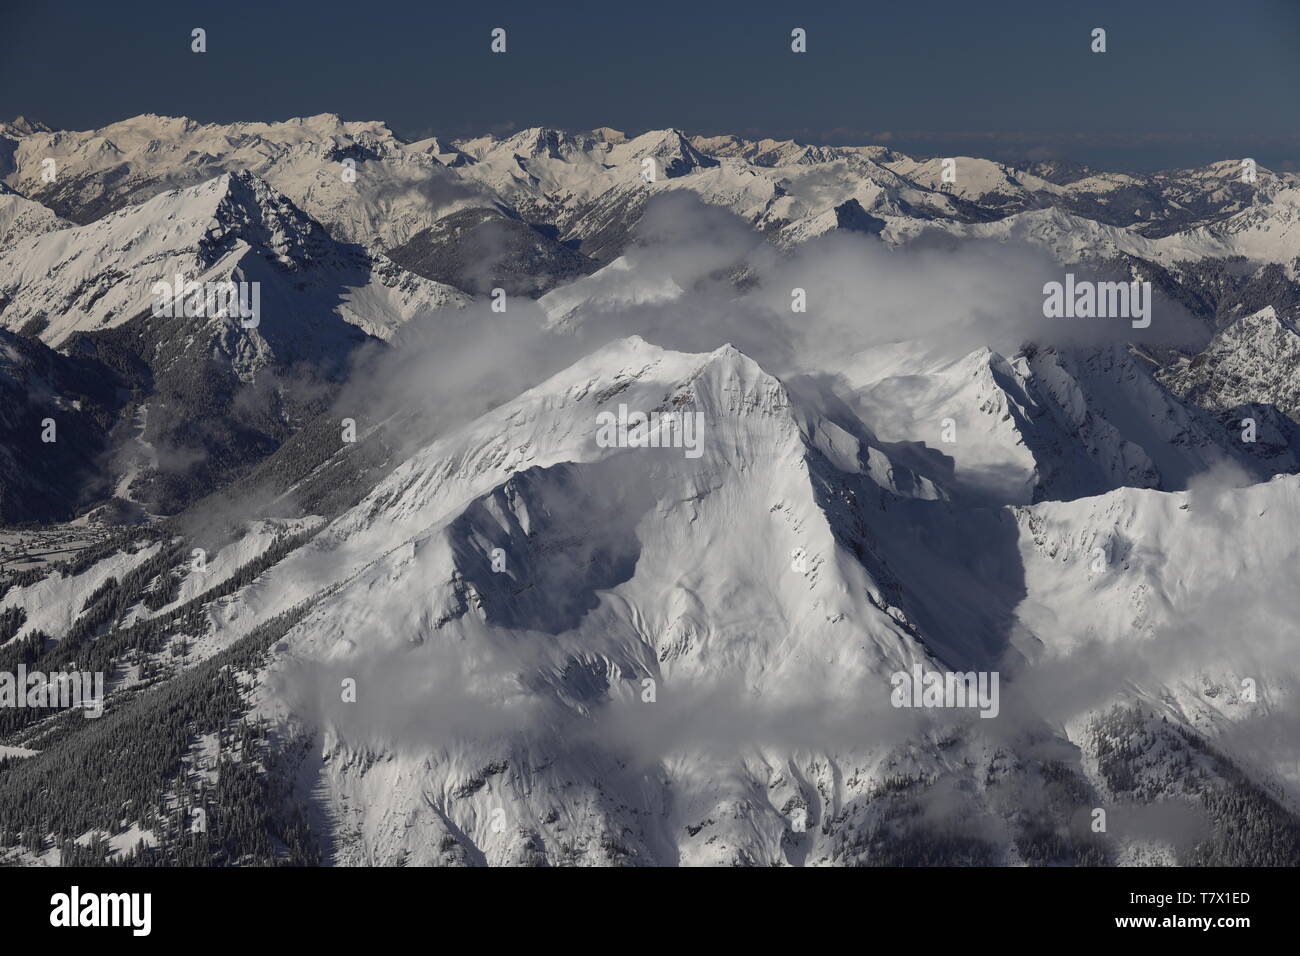 Zugspitze: Winterliches Alpenpanorama bei frostiger Fernsicht. Im VordergrundderHochblassen. Link Grainau Foto Stock